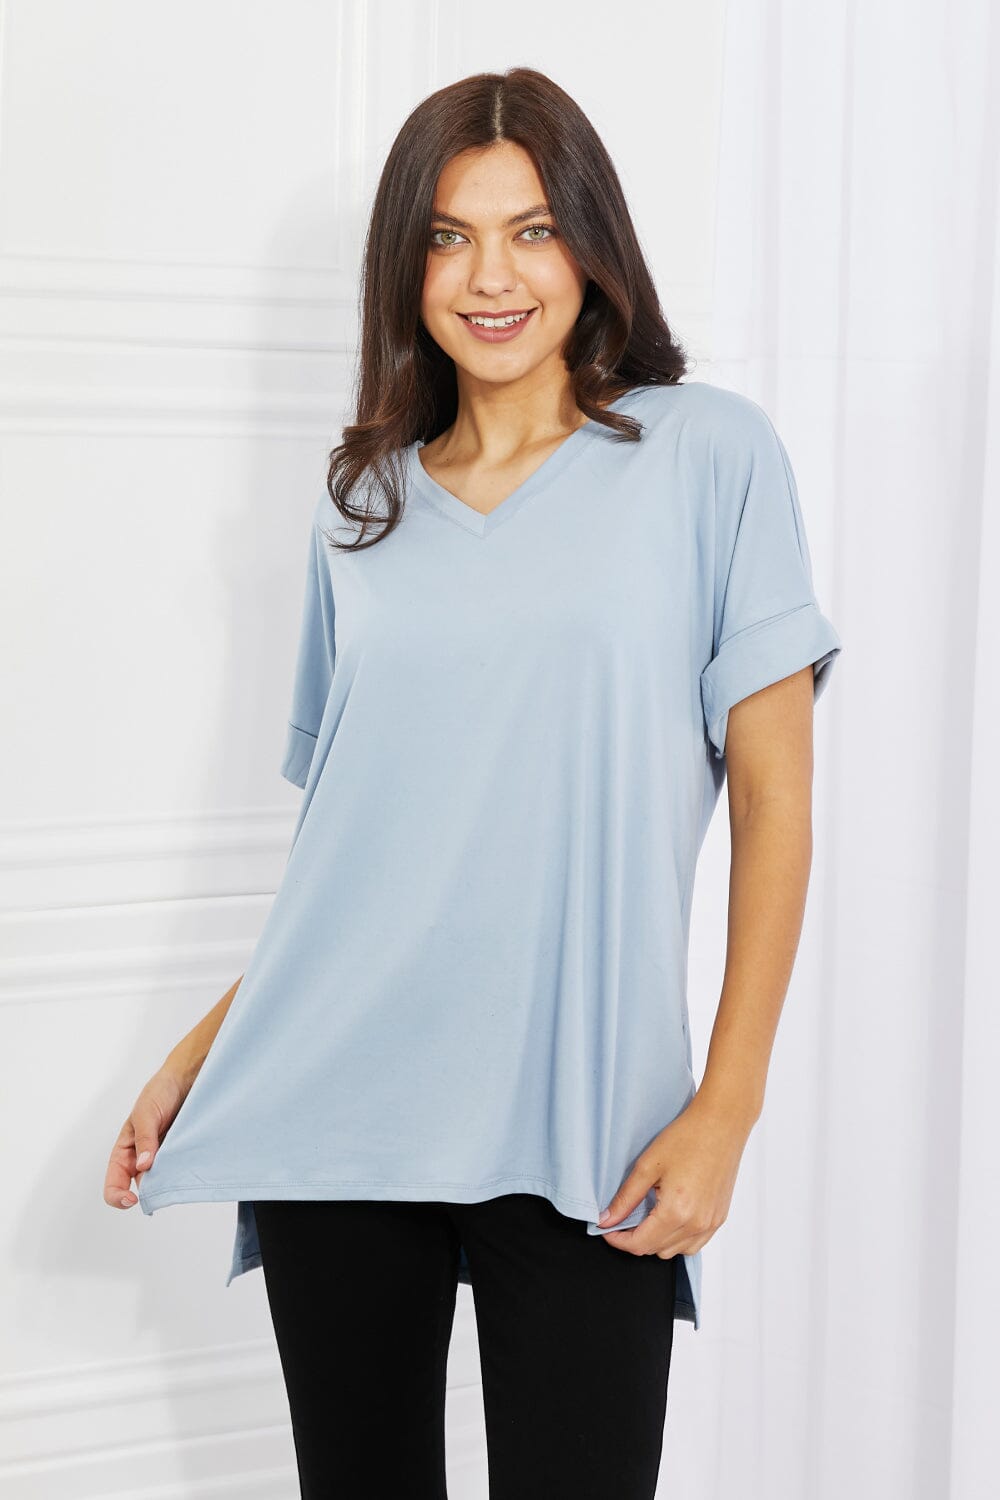 Zenana Misty Blue V-Neck Loose Fit T-Shirt Top Shirts & Tops jehouze 